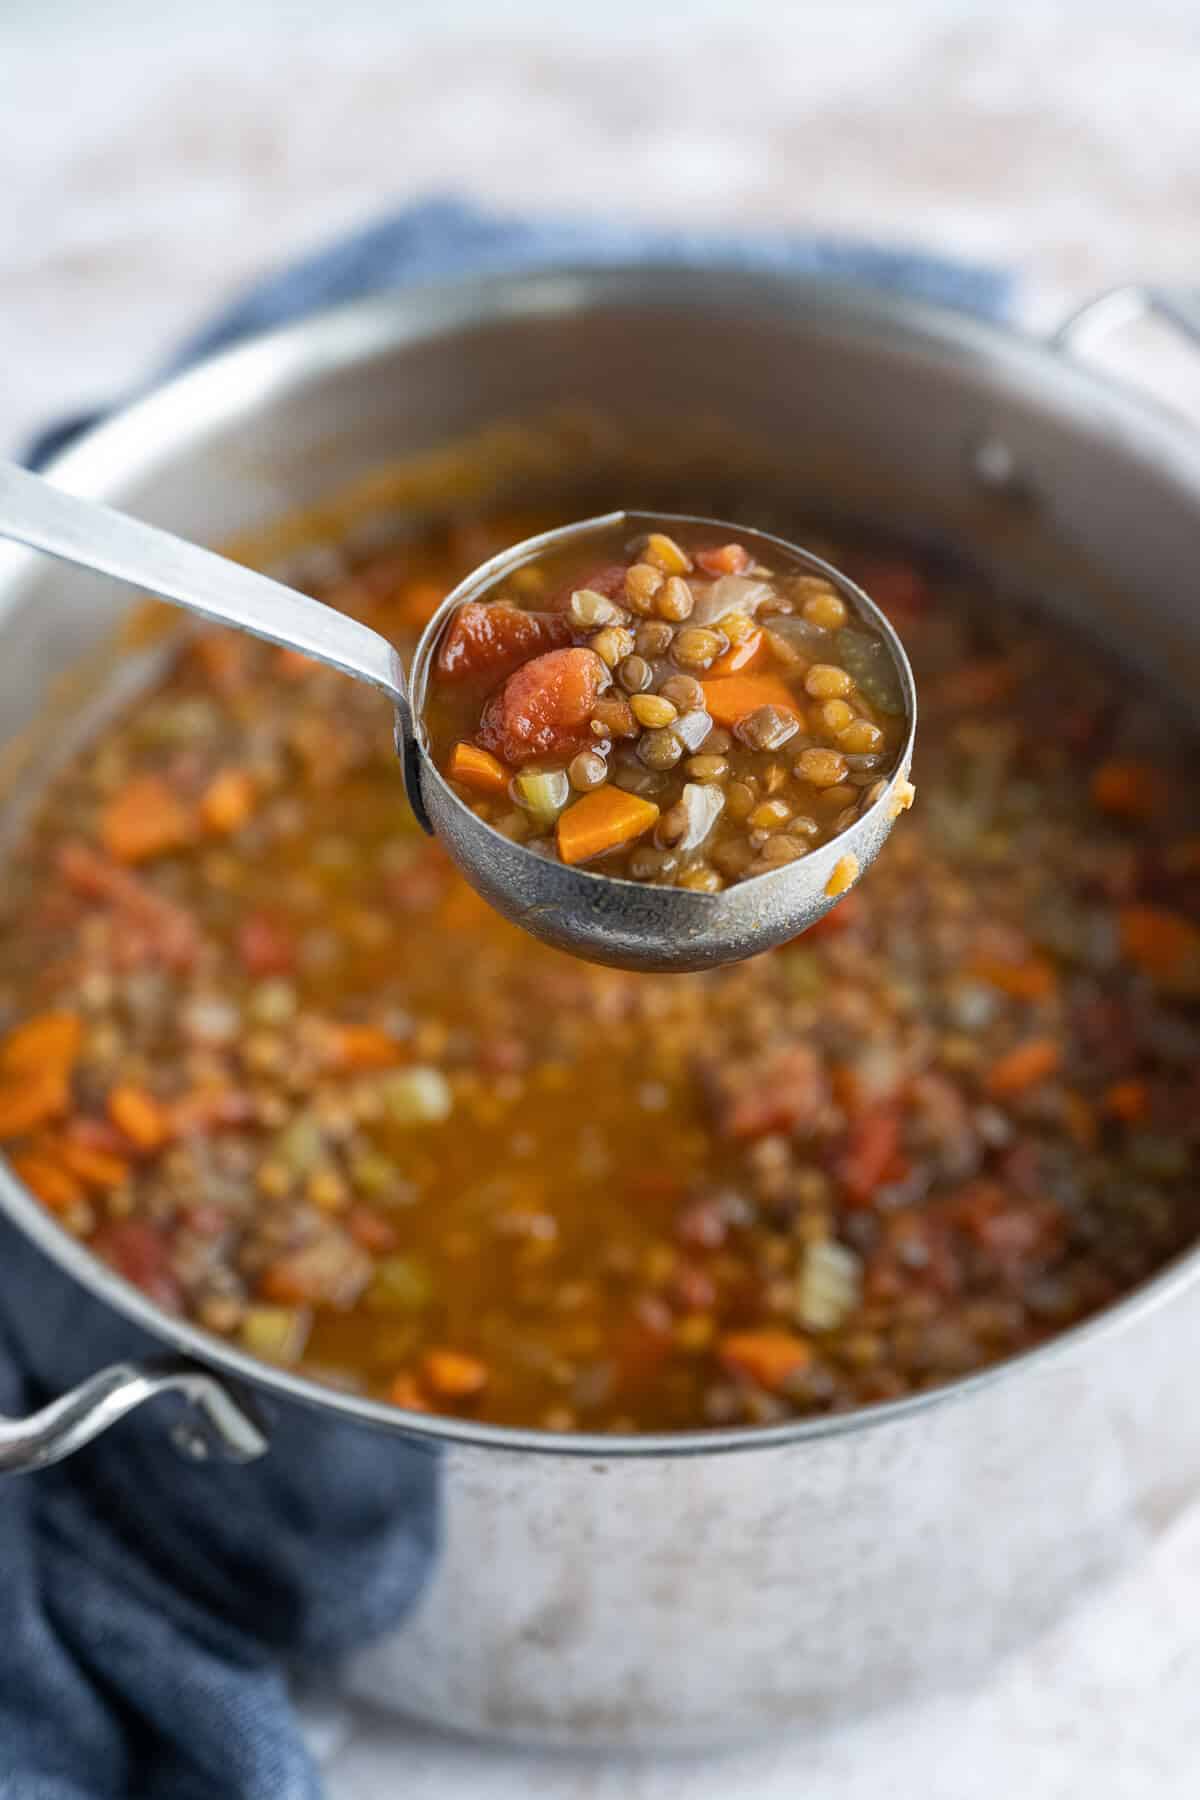 A ladle full of Lentil Soup over a pot of it.